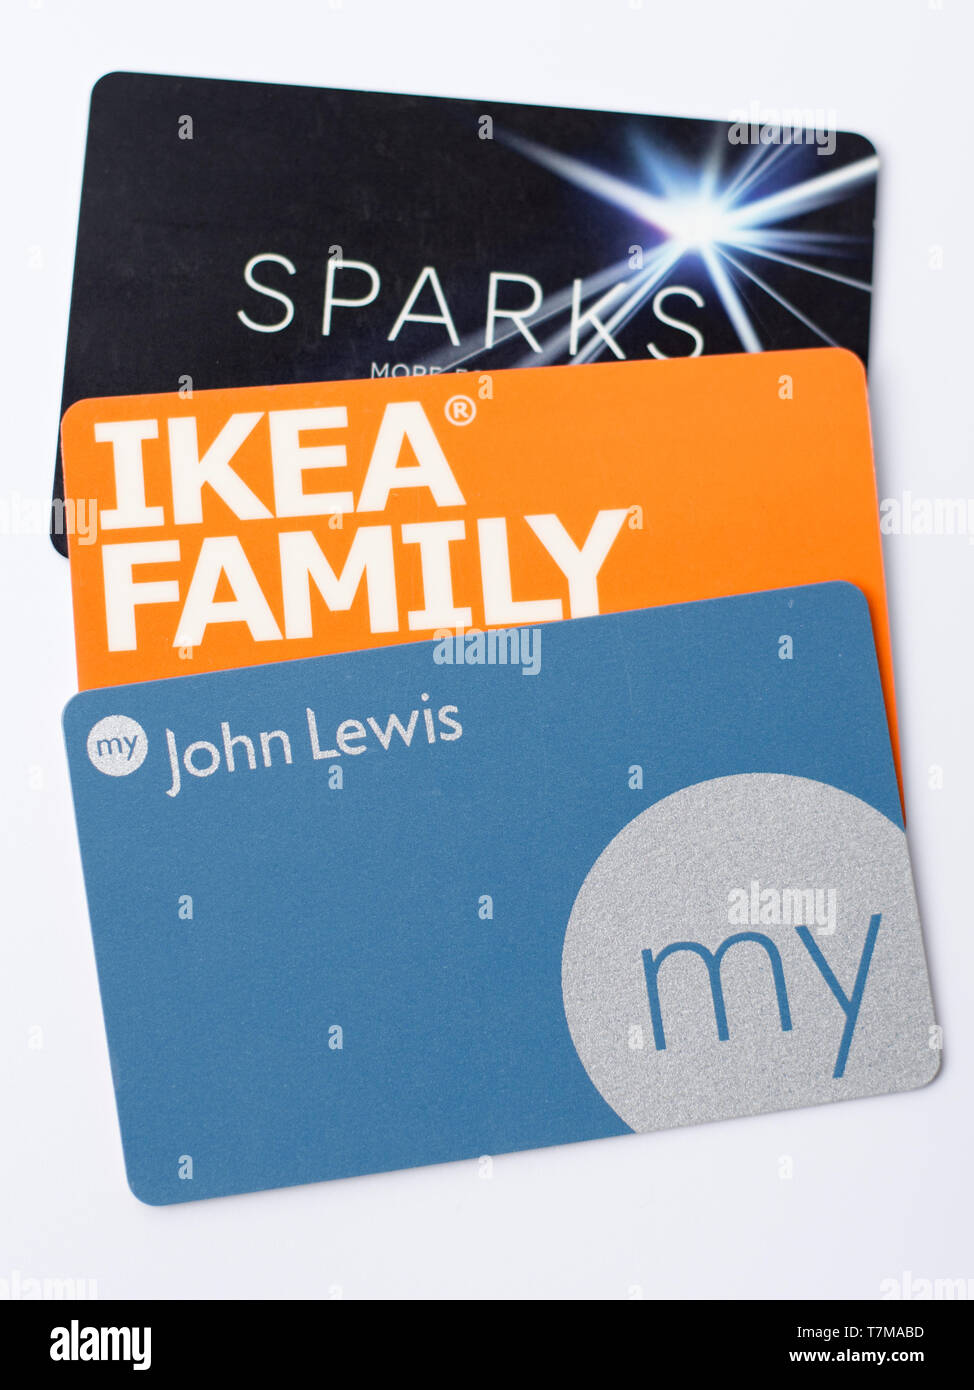 Ikea family card immagini e fotografie stock ad alta risoluzione - Alamy